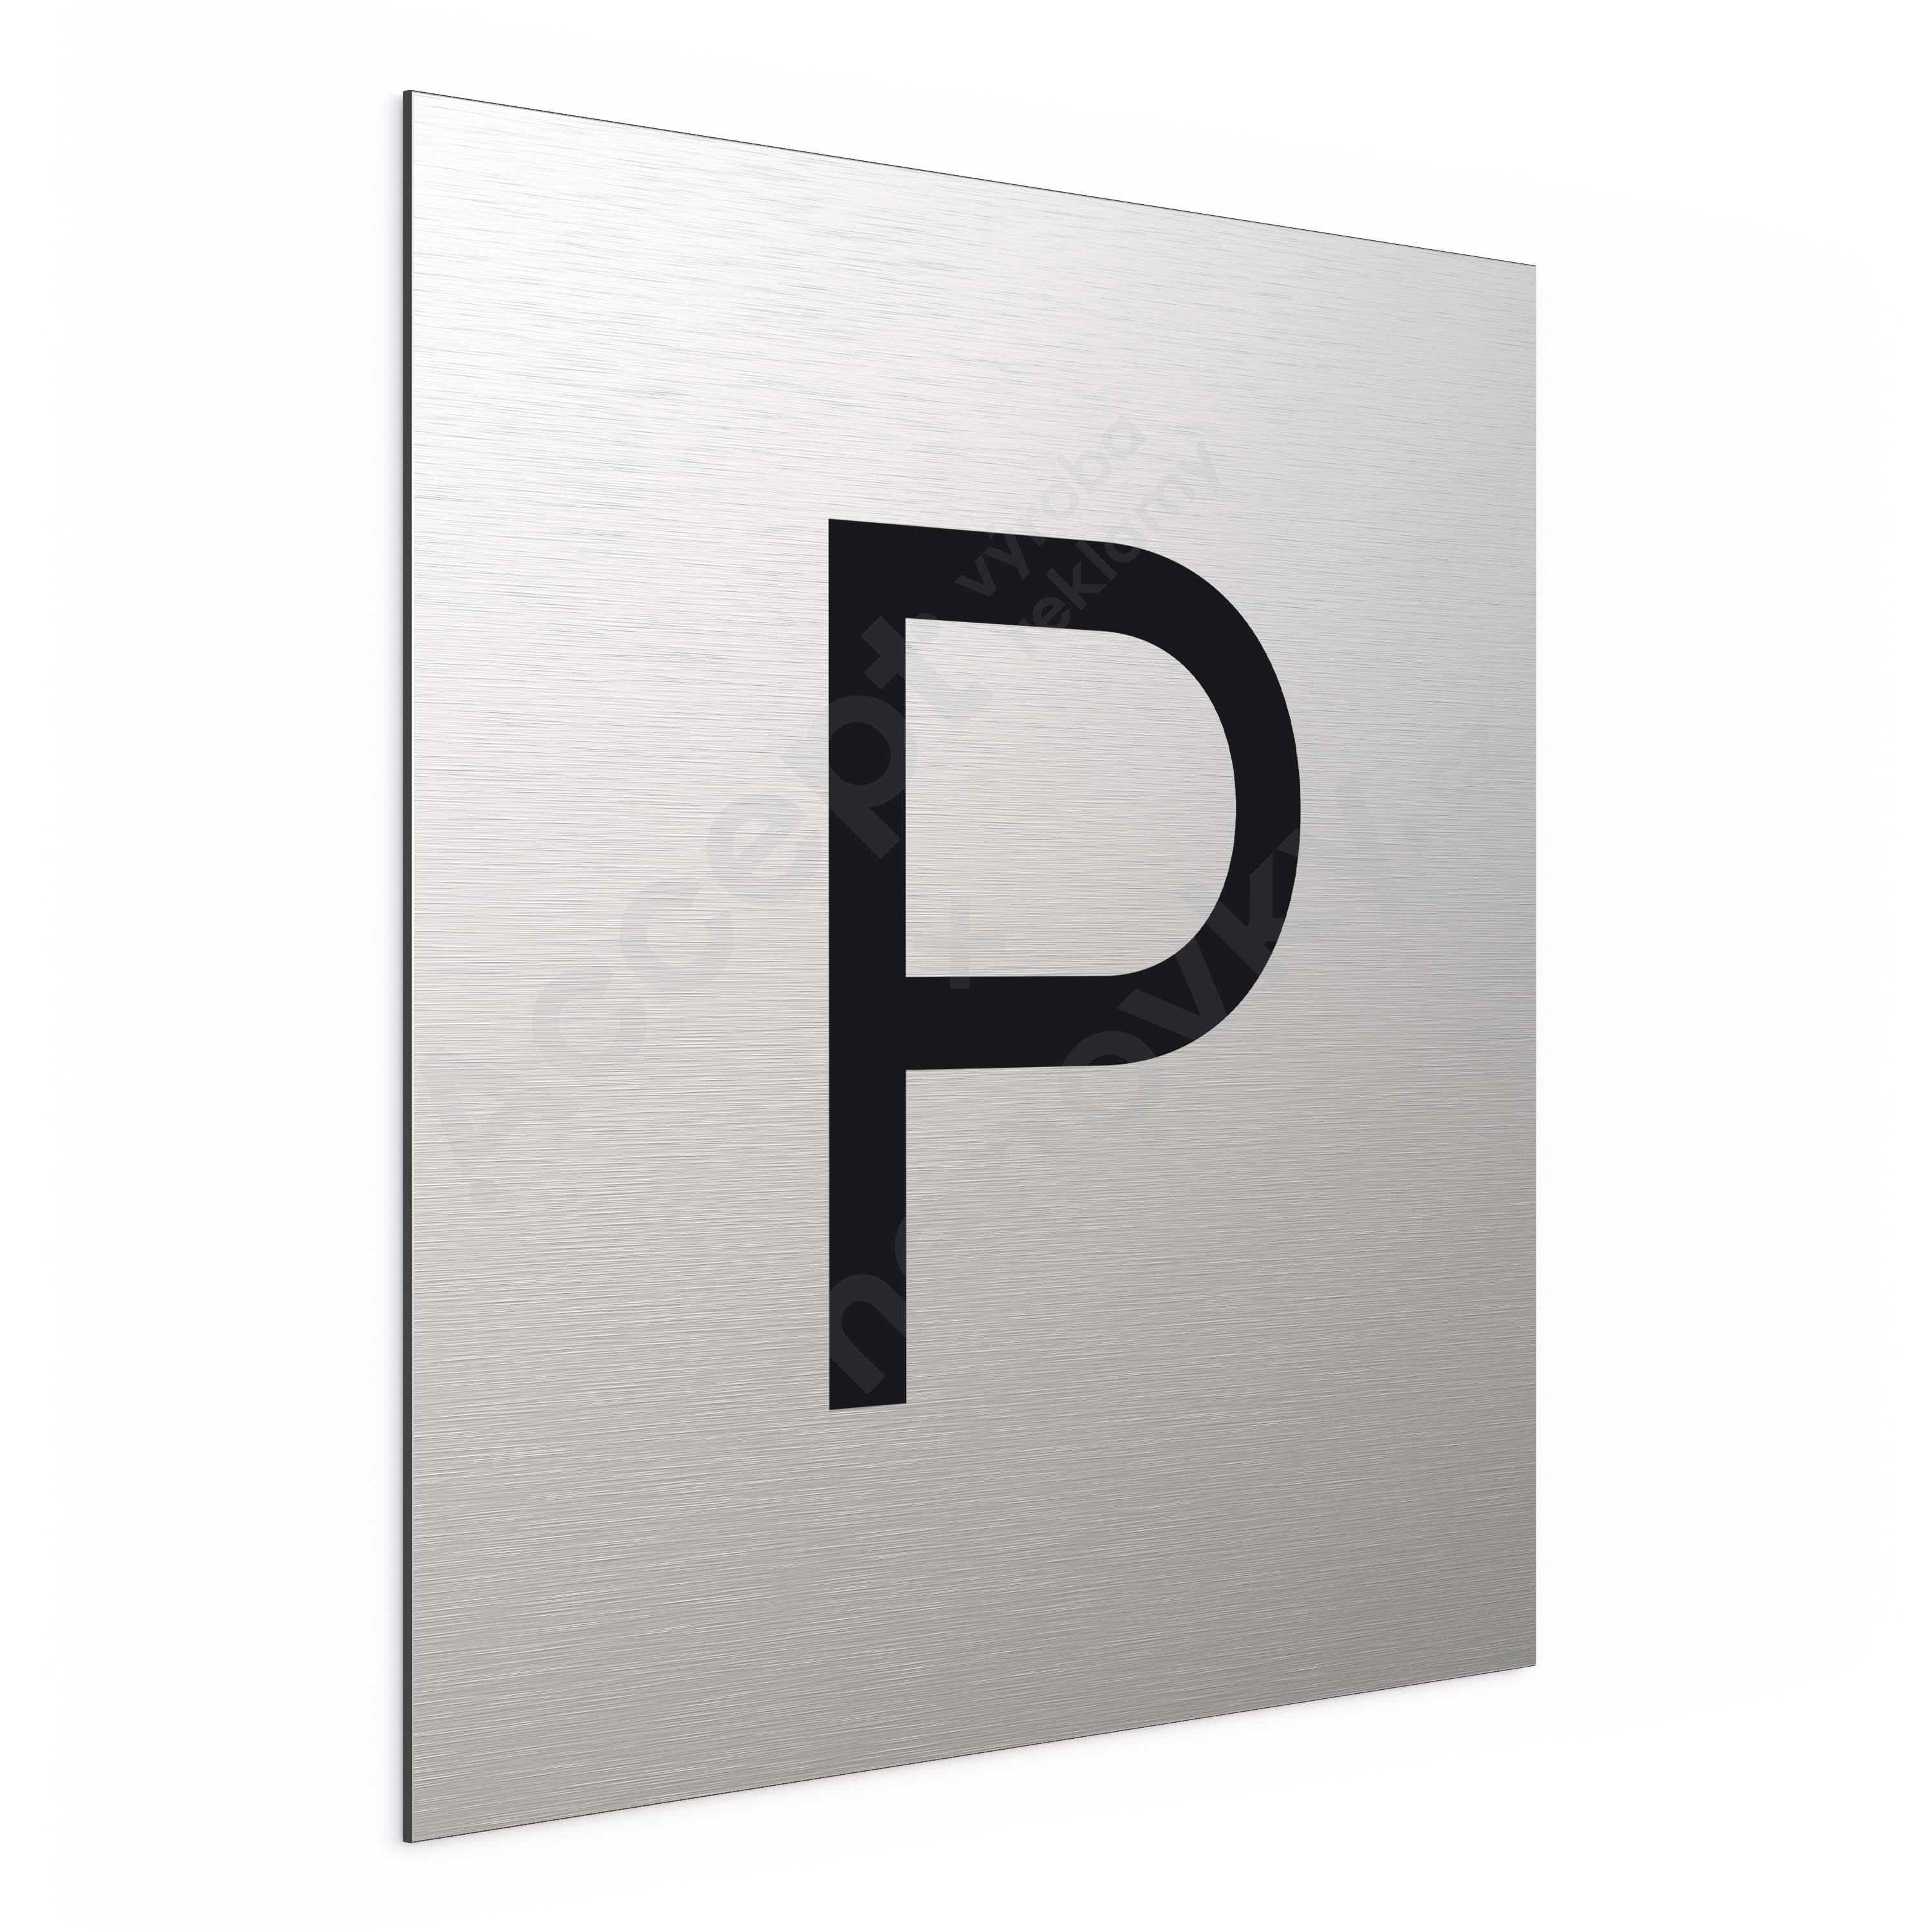 Označení podlaží - písmeno "P" (300 x 300 mm)